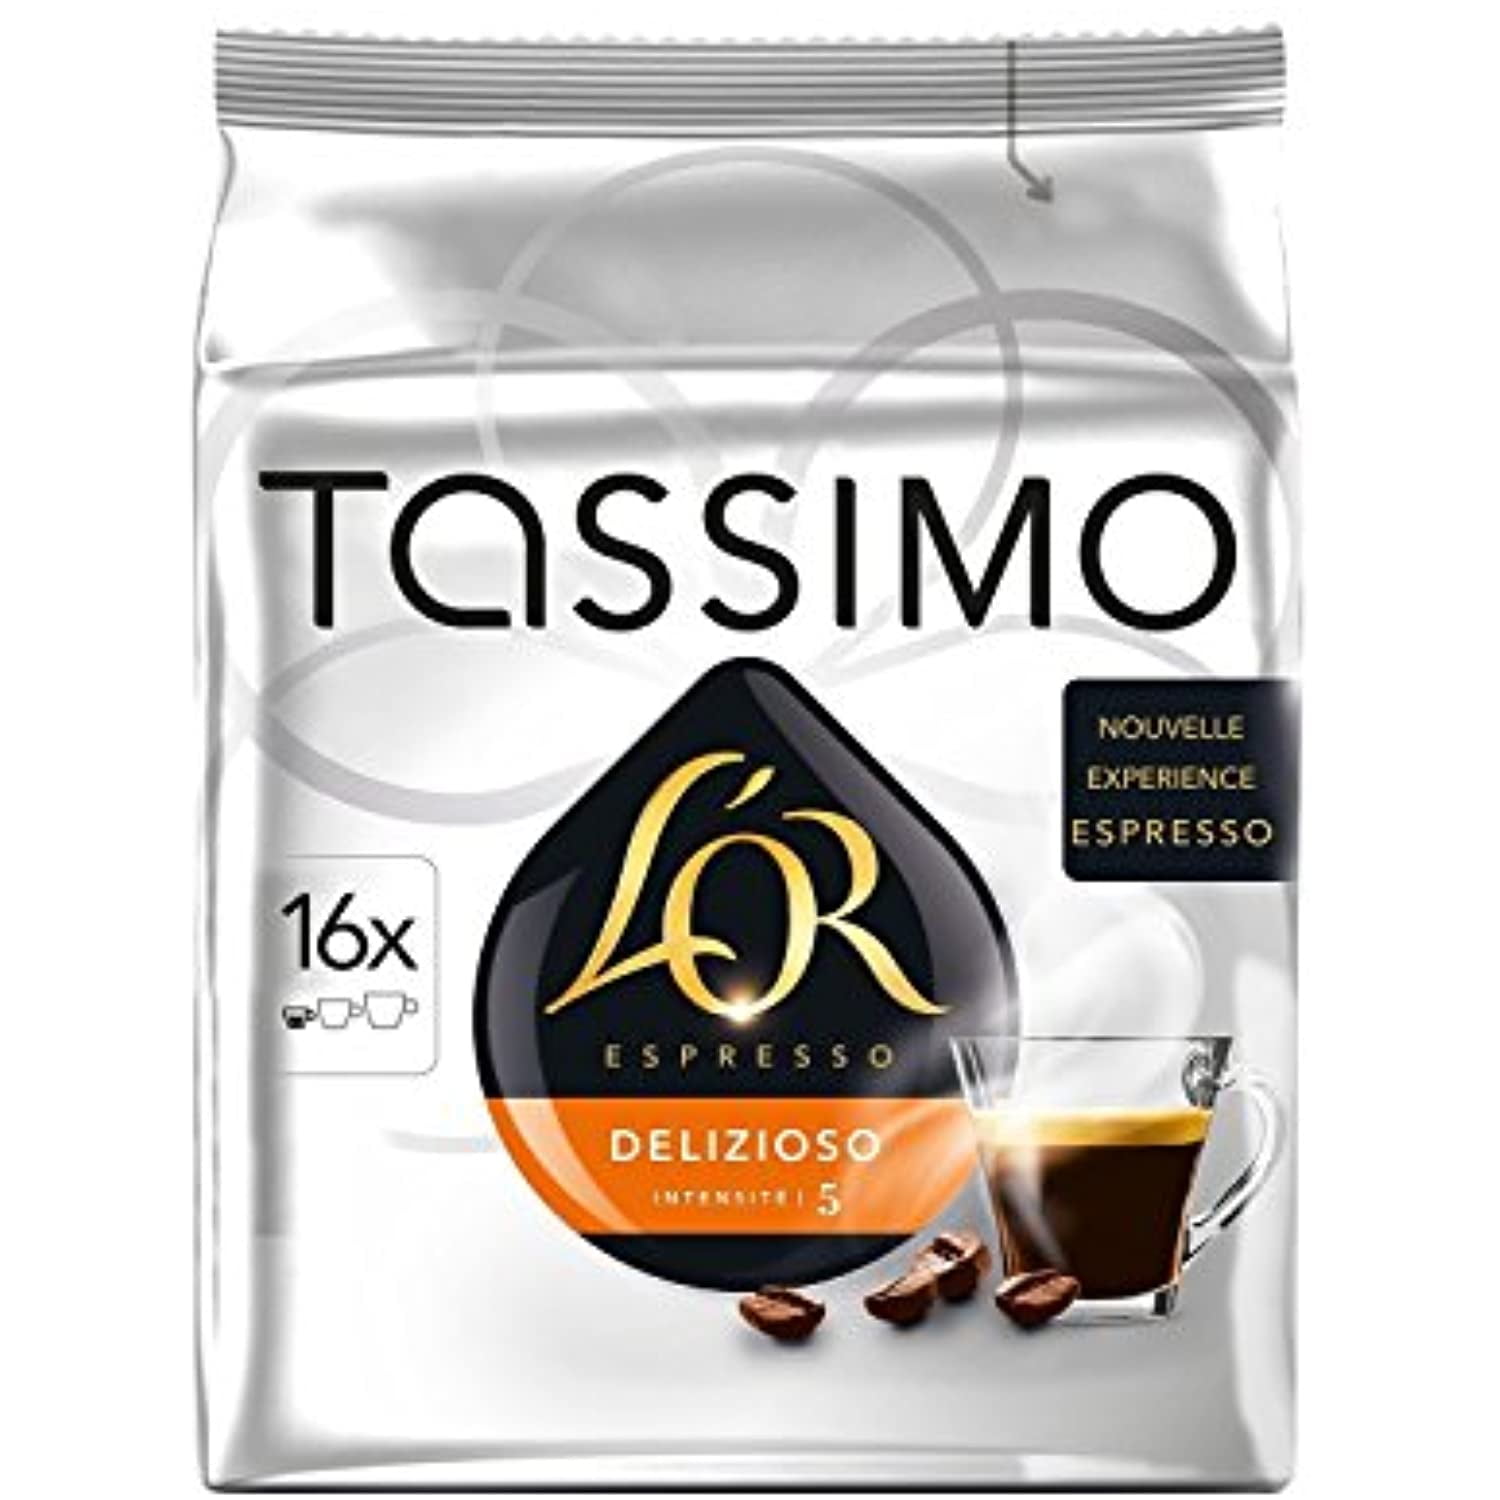 Tassimo Café con leche en cápsulas Marcilla Tassimo 16 unidades de 11,5 g